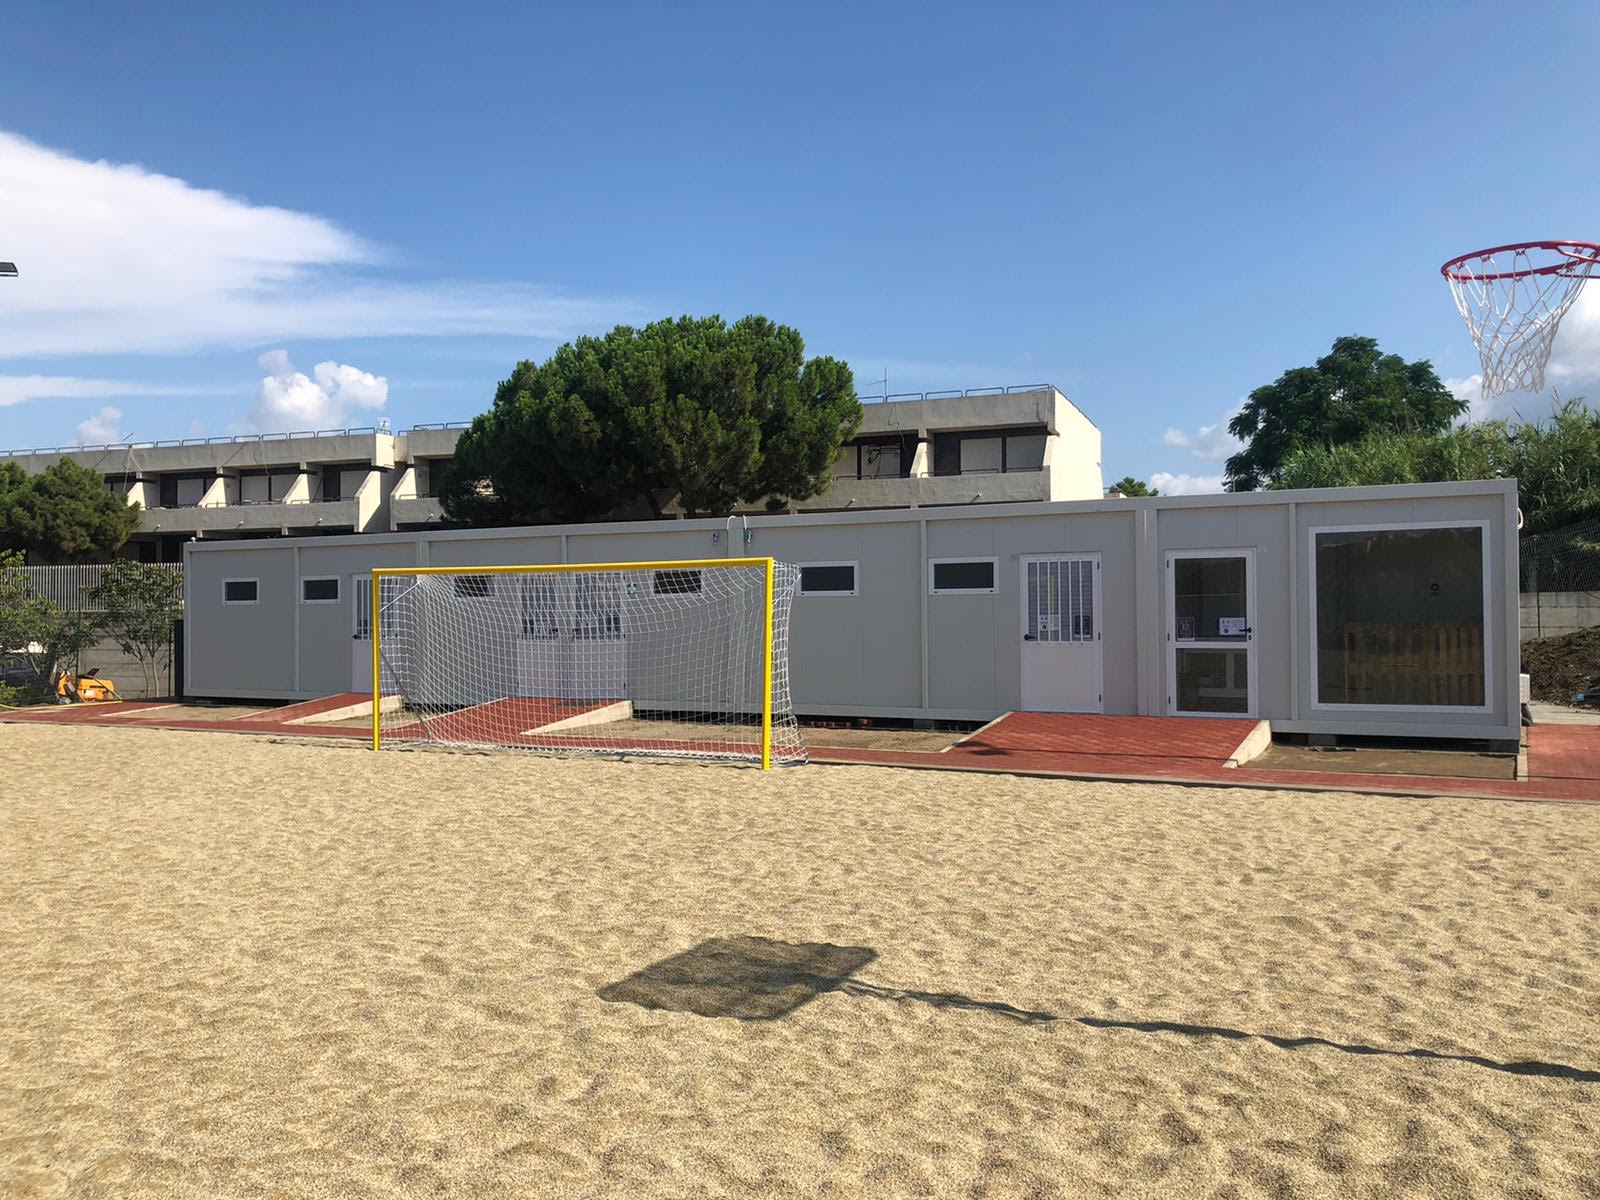 A Reggio Calabria apre il Planet Beach Arena: primo tempio degli sport sulla sabbia in riva allo stretto